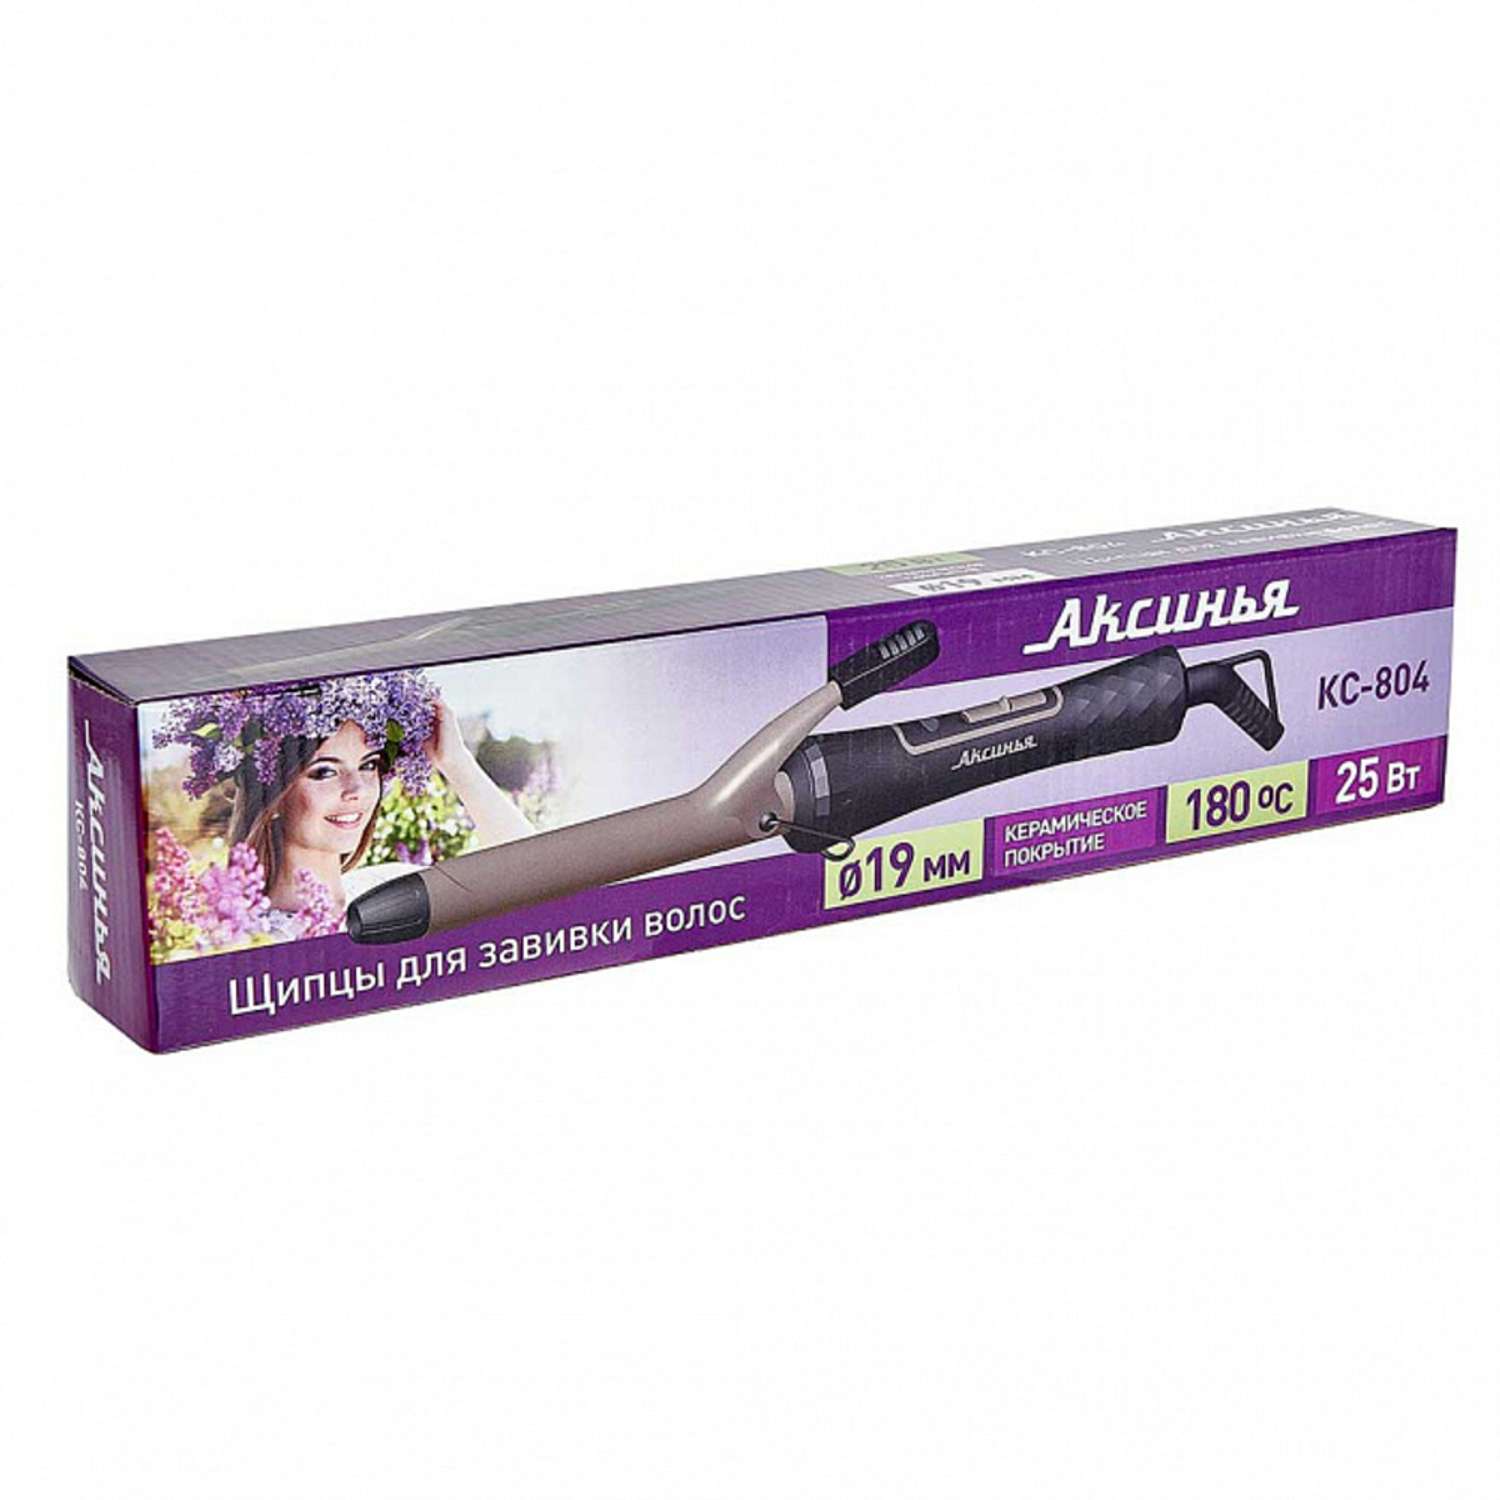 Стайлер для завивки волос Аксинья КС-804 черный с золотым керамическое покрытие d 19 мм 35 Вт - фото 4